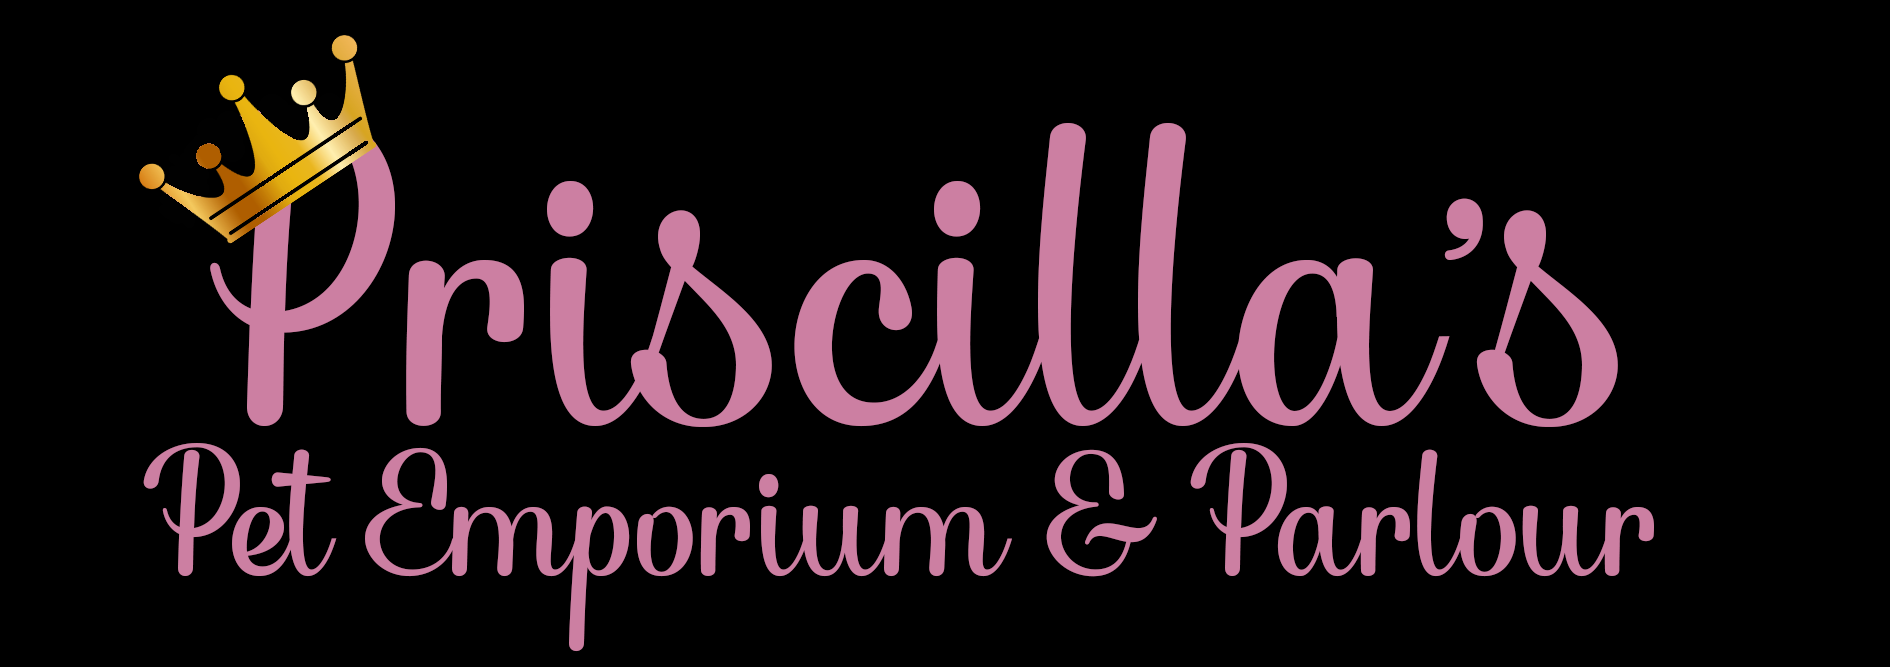 Priscilla's Pet Emporium & Parlour